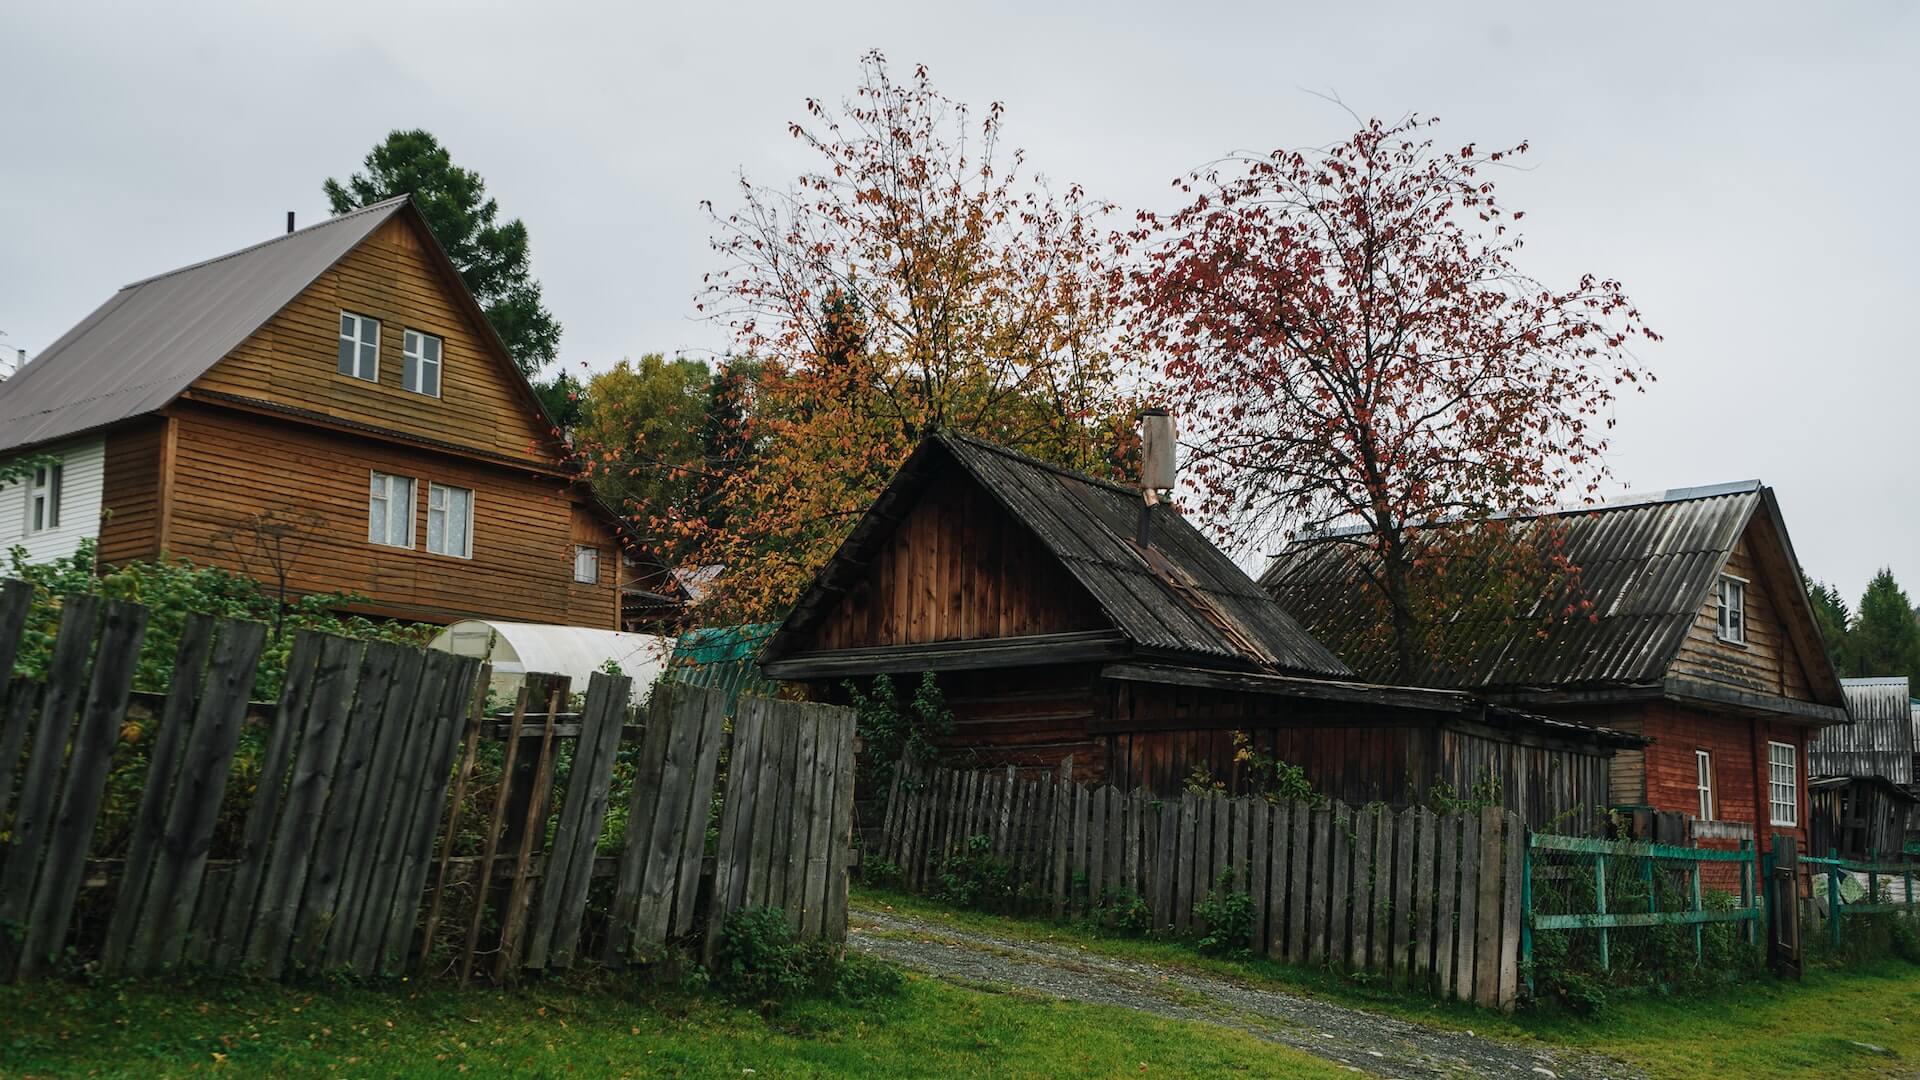 hut-style hamlet